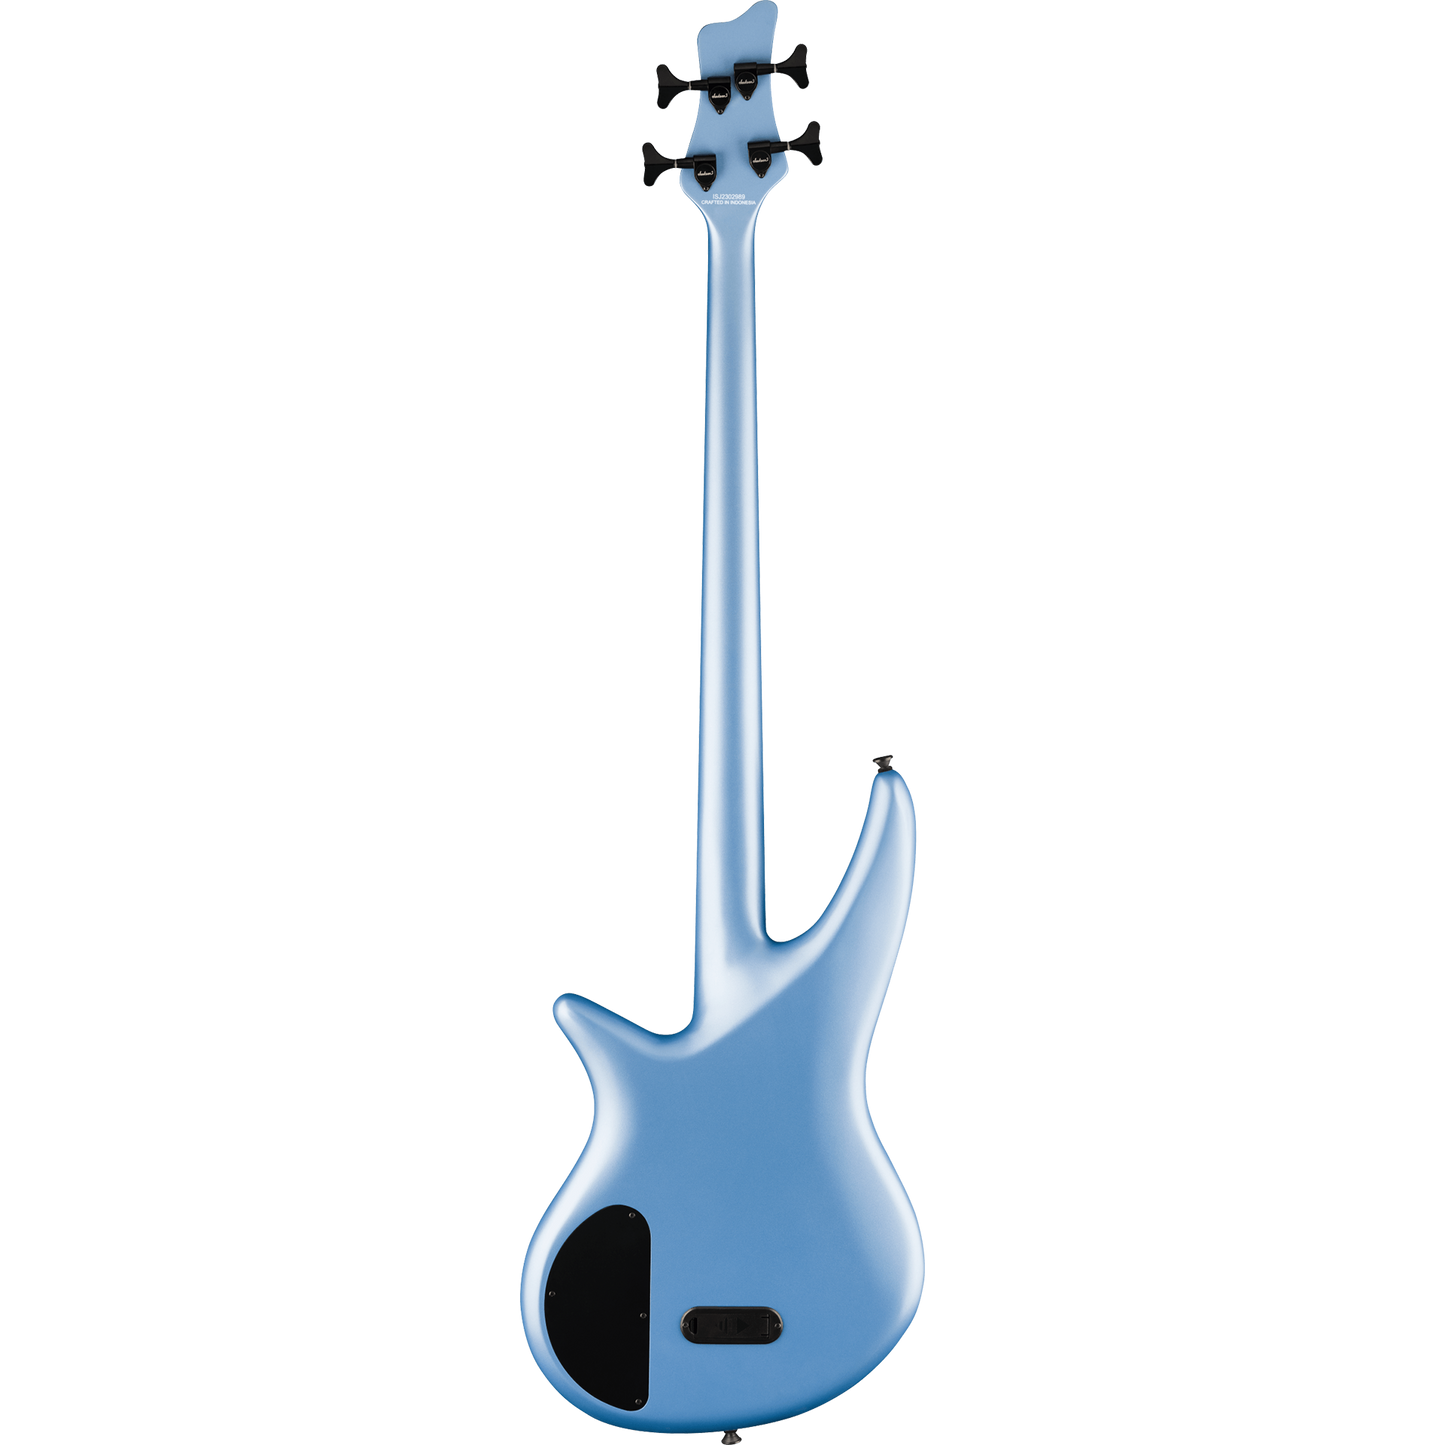 Jackson X Series Spectra Bass SBX IV Bass Guitar, Matte Blue Frost